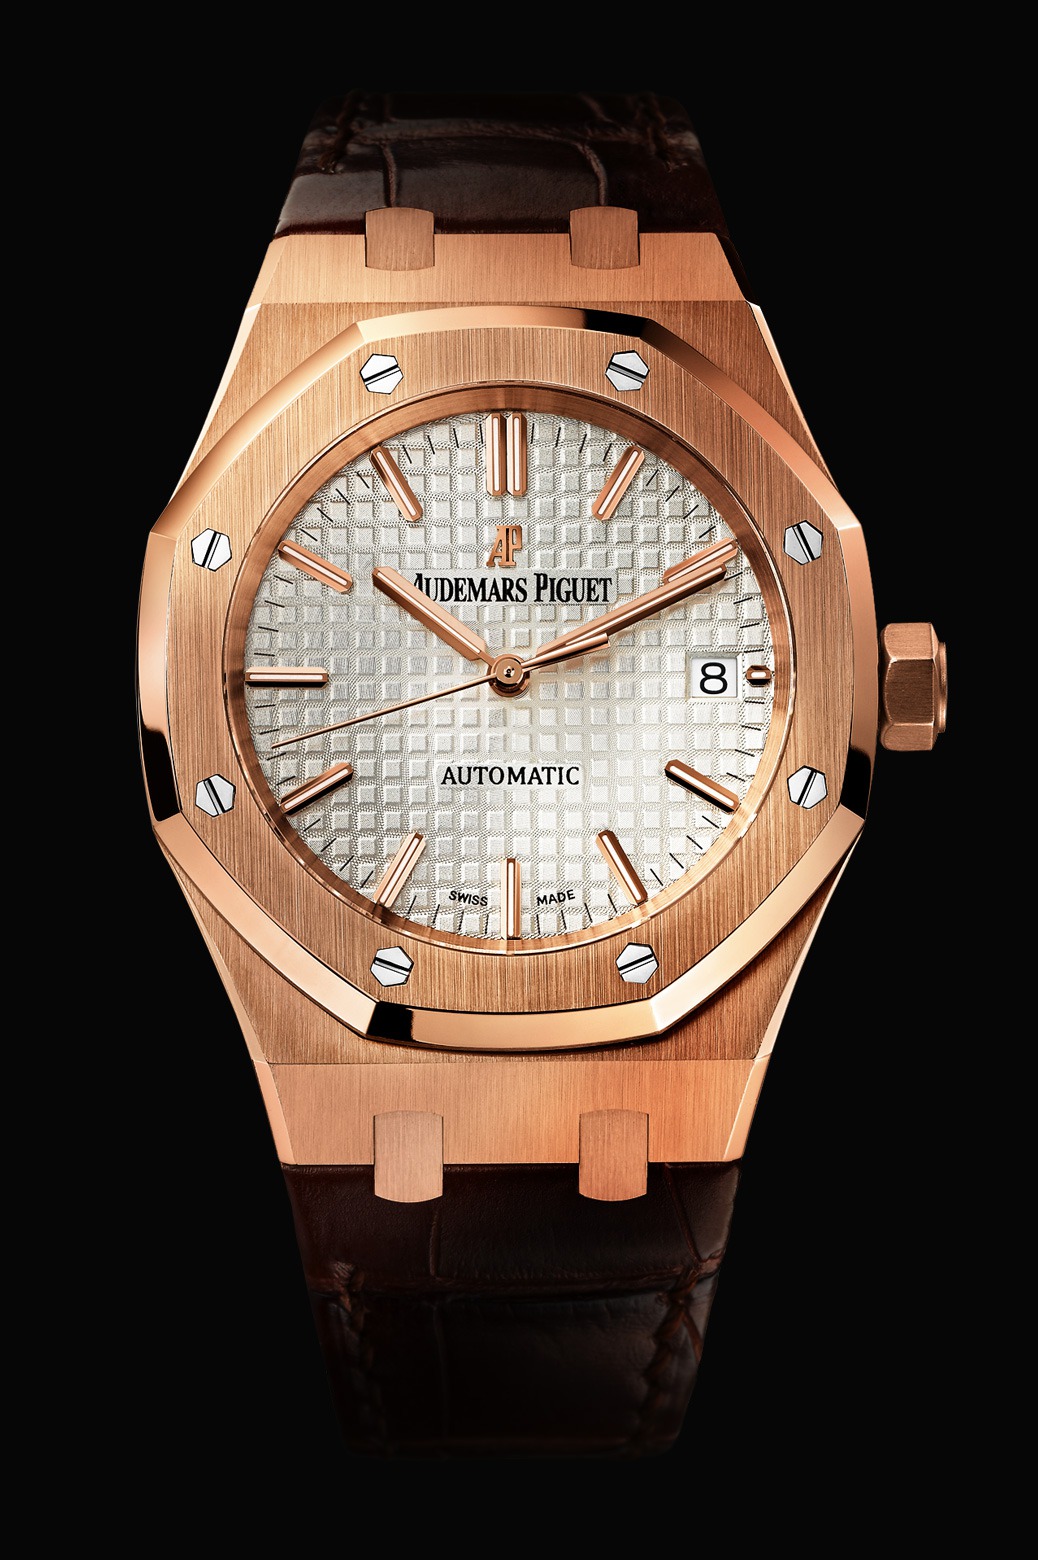 Audemars Piguet Royal Oak Automatic Pink Gold watch REF: 15450OR.OO.D088CR.01